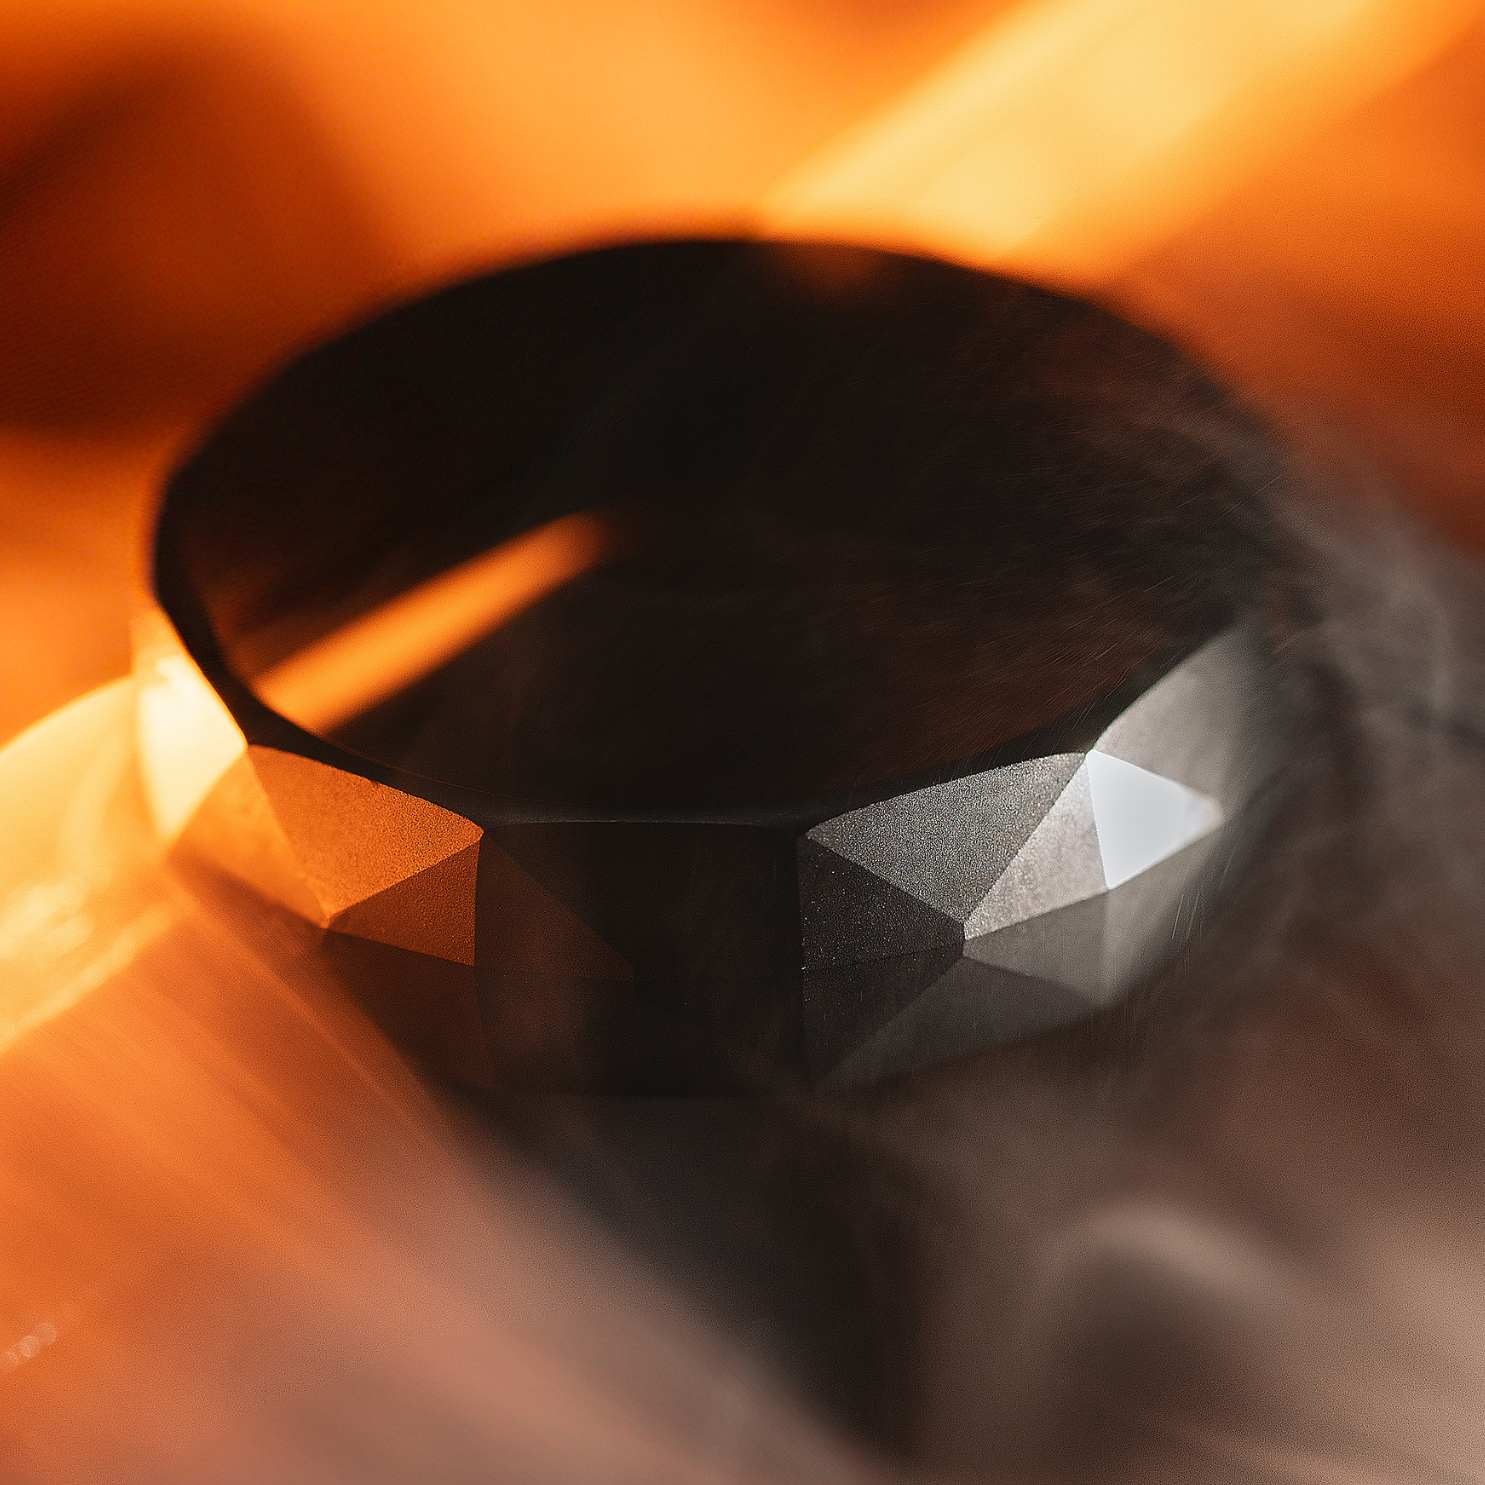 M Premium Jewellery Wakanda Matte Black Ceramic Ring